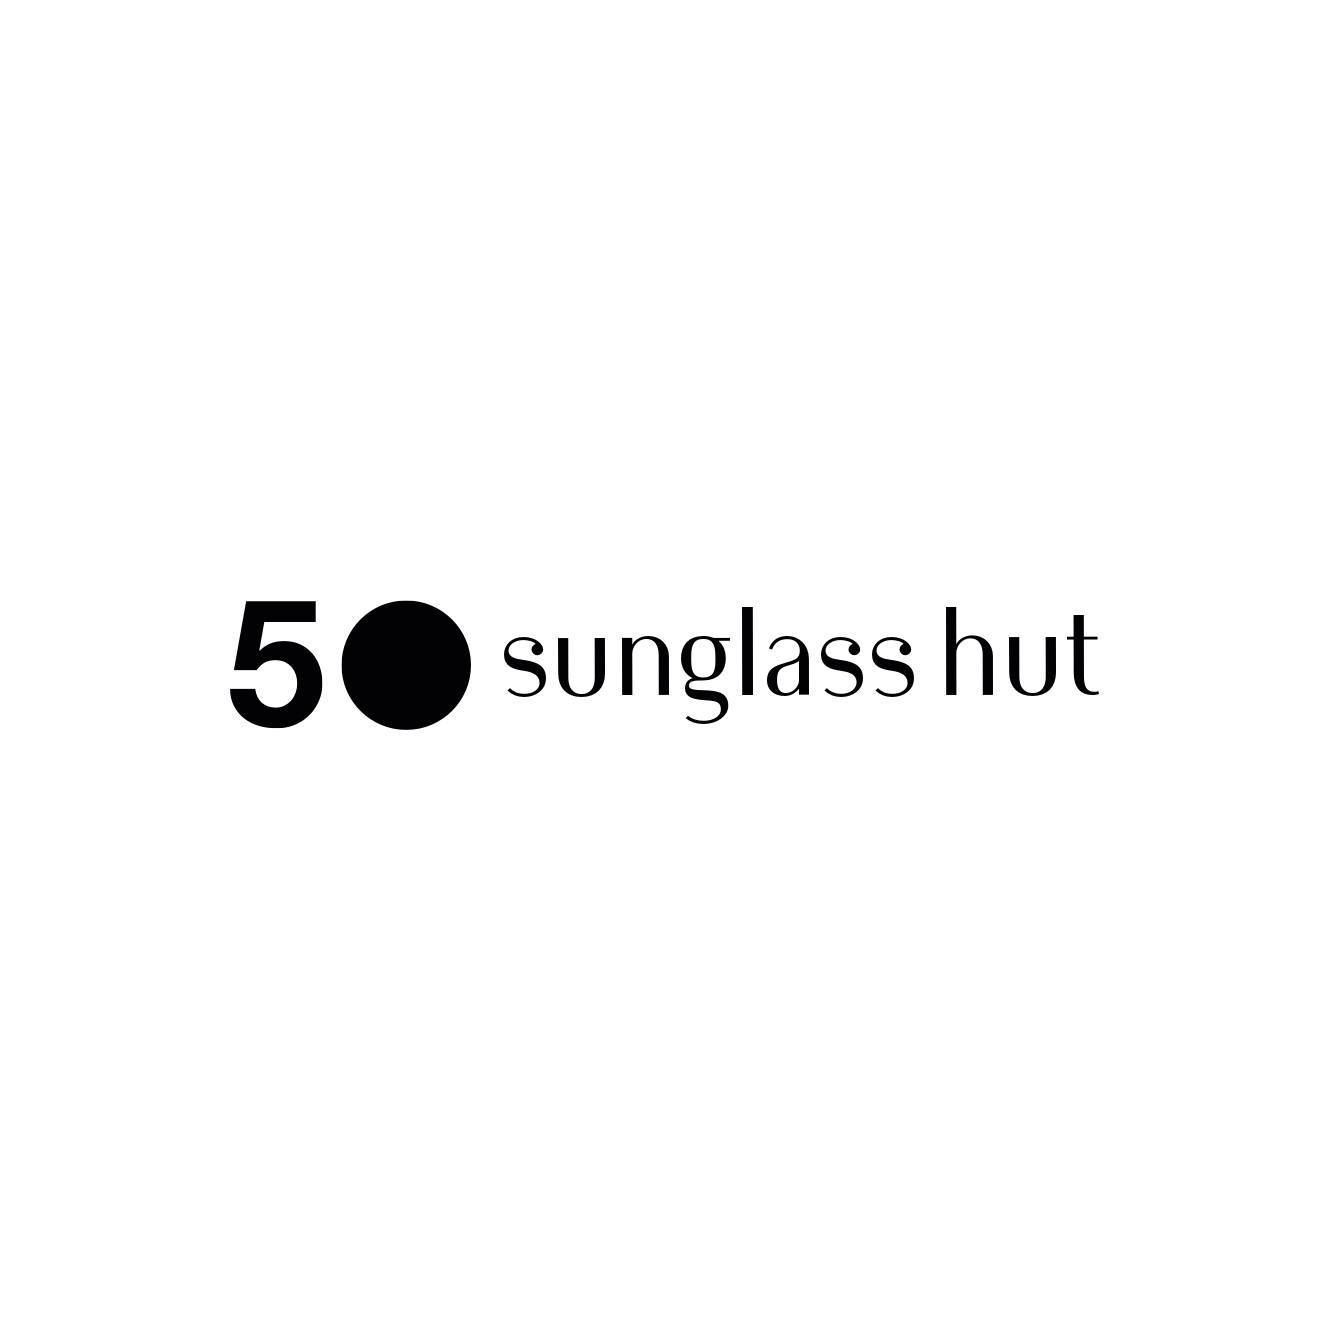 Business logo of Sunglass Hut